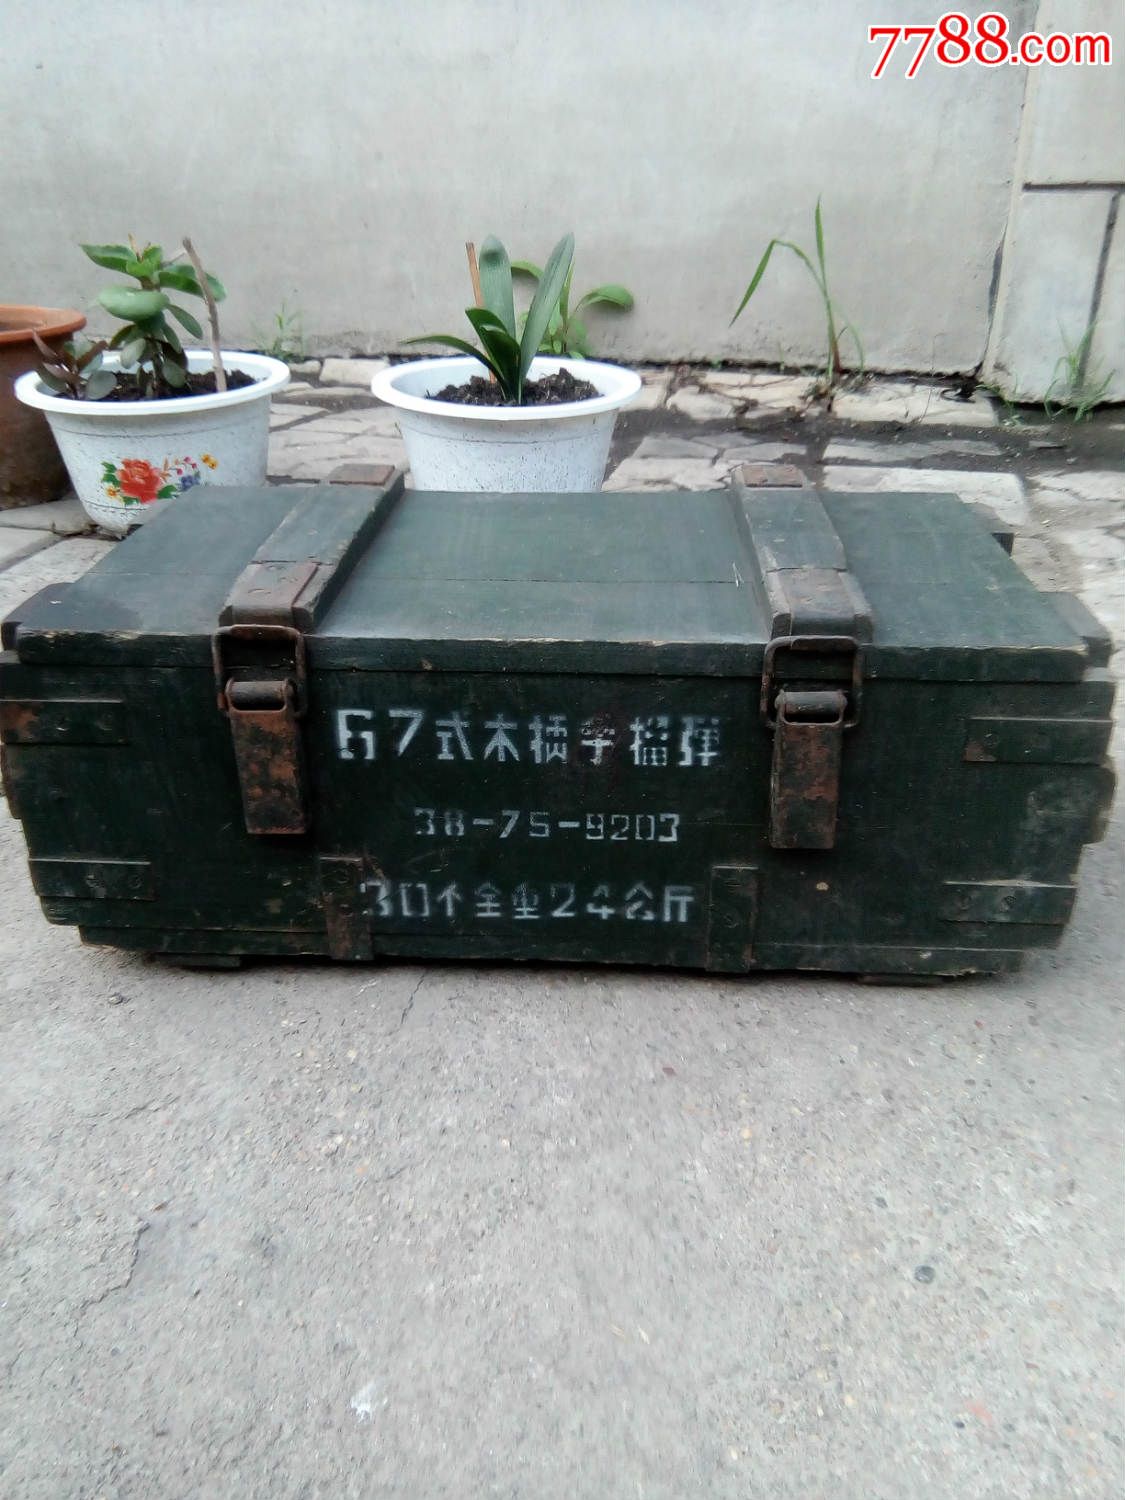 67式手榴弹箱